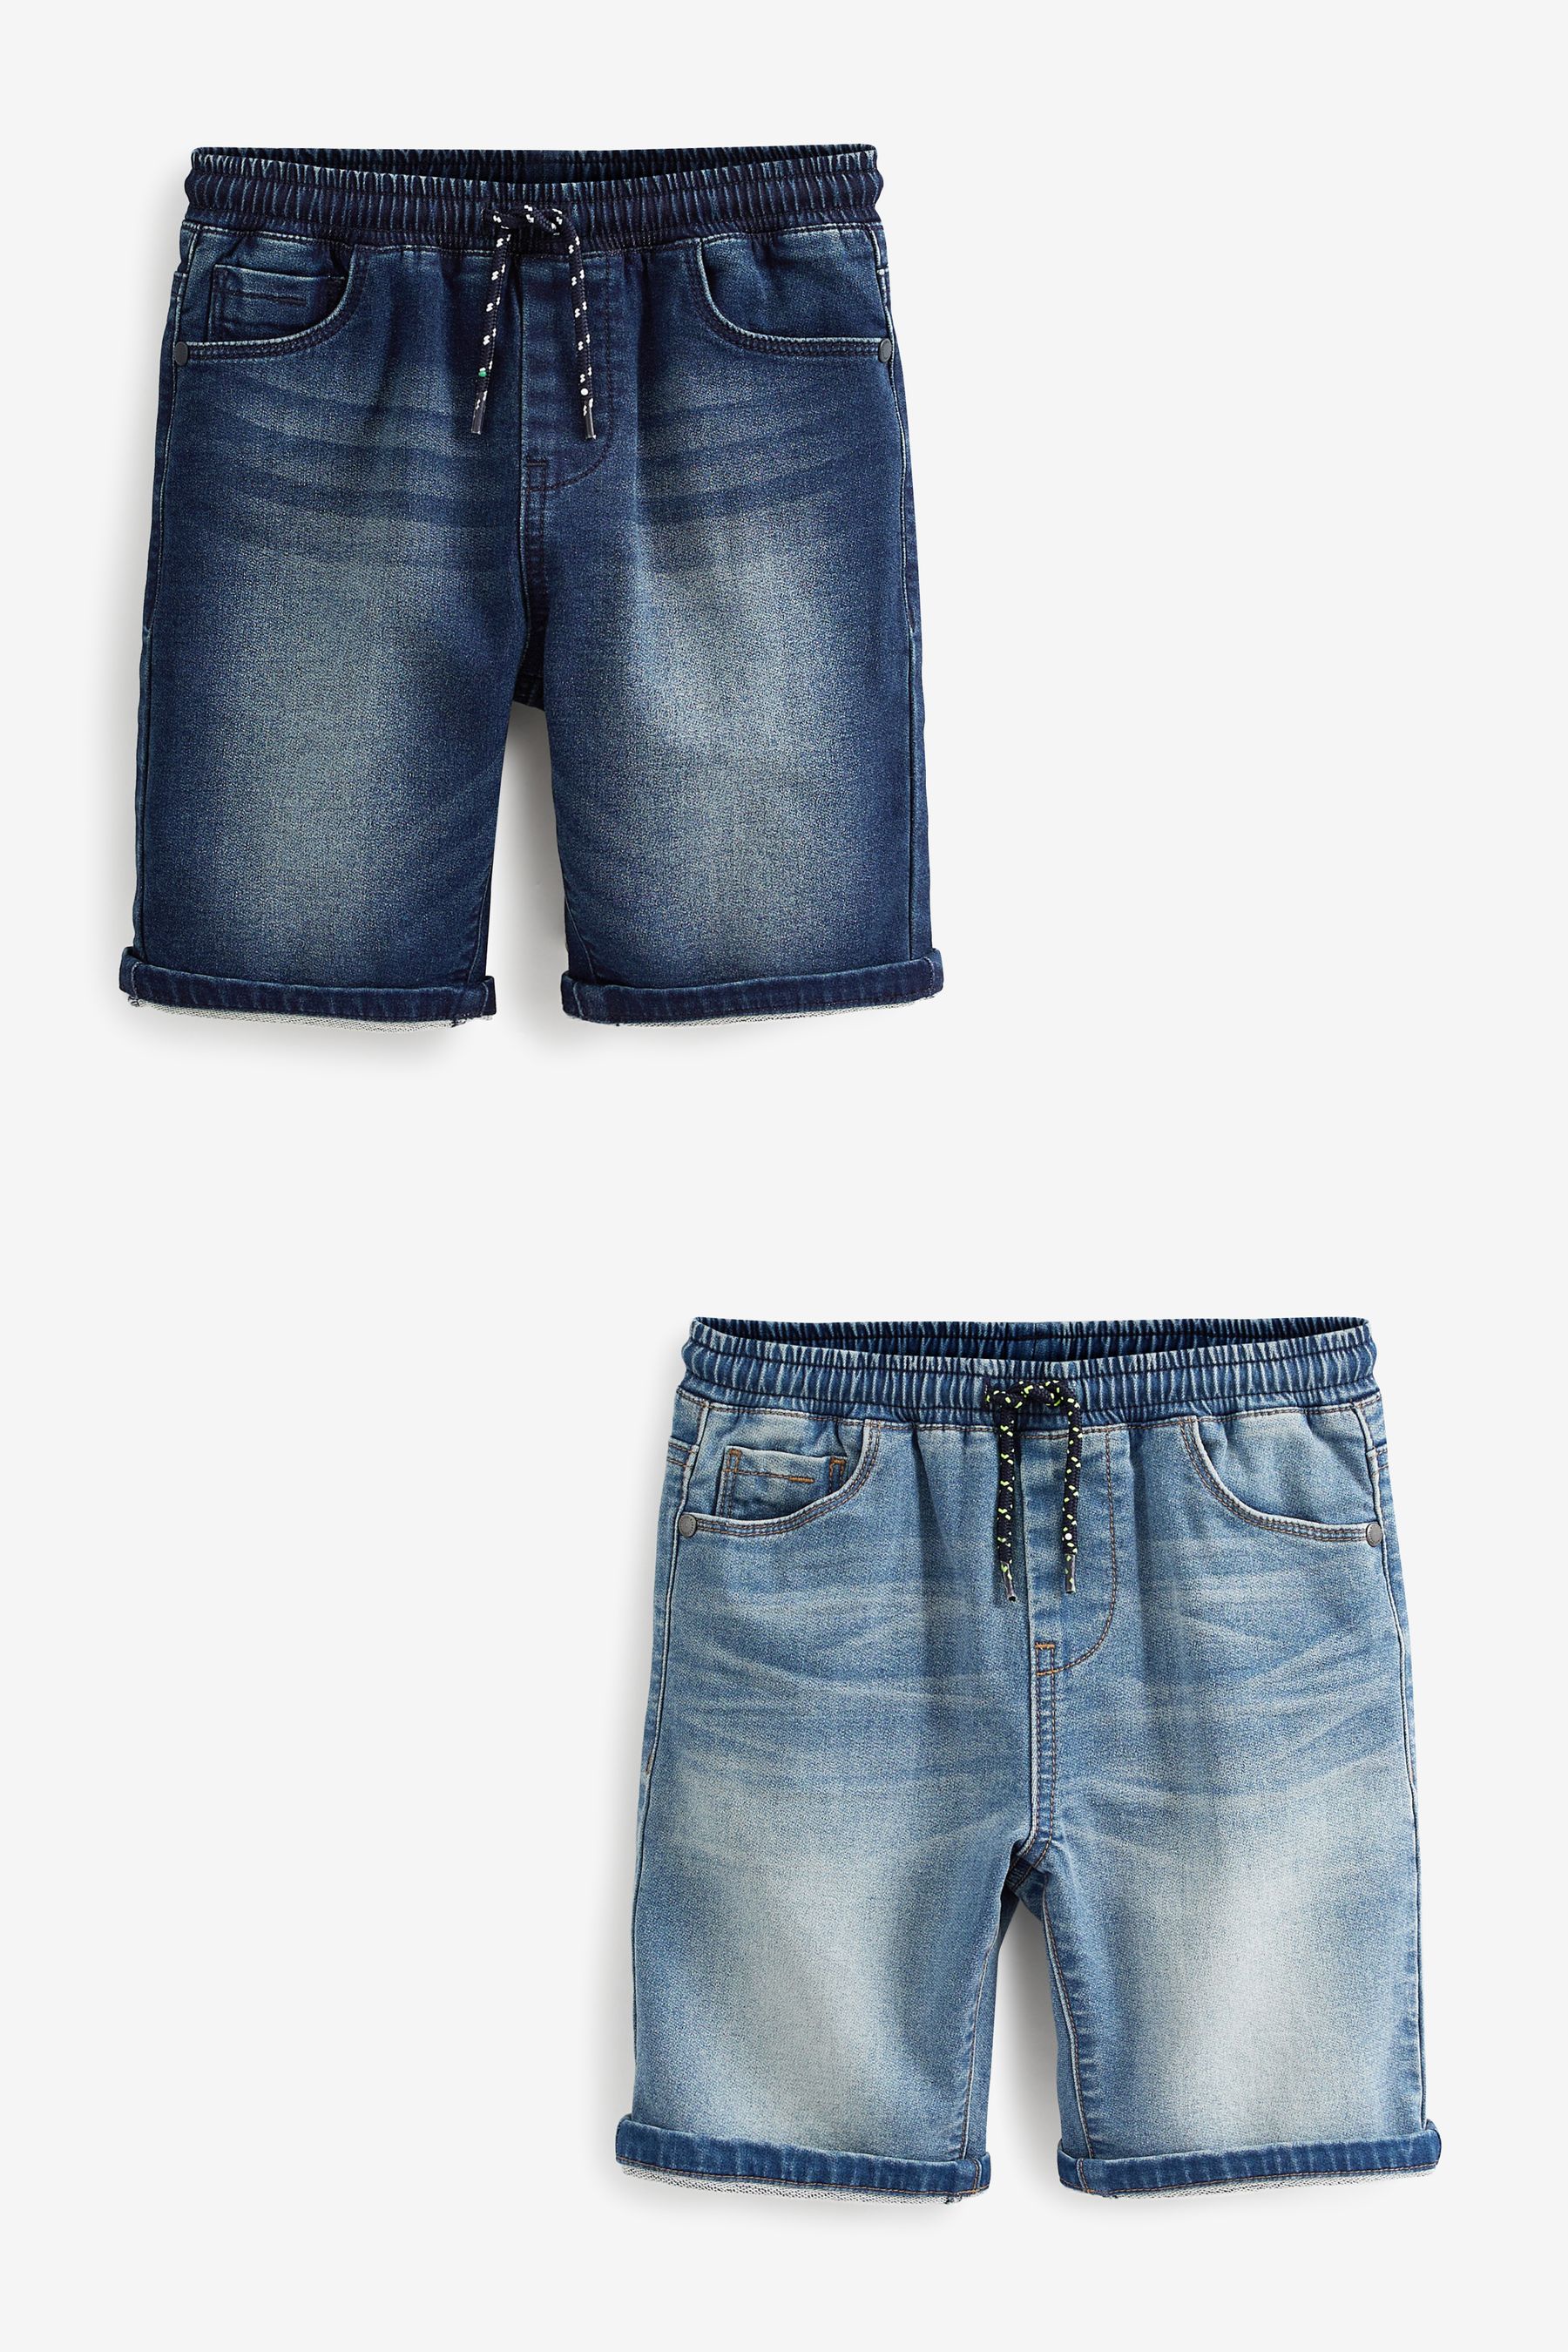 Комплект из 2 пар джинсовых шорт из джерси Next, синий комплект из 2 пижамных шорт из джерси для мальчиков bedlam синий